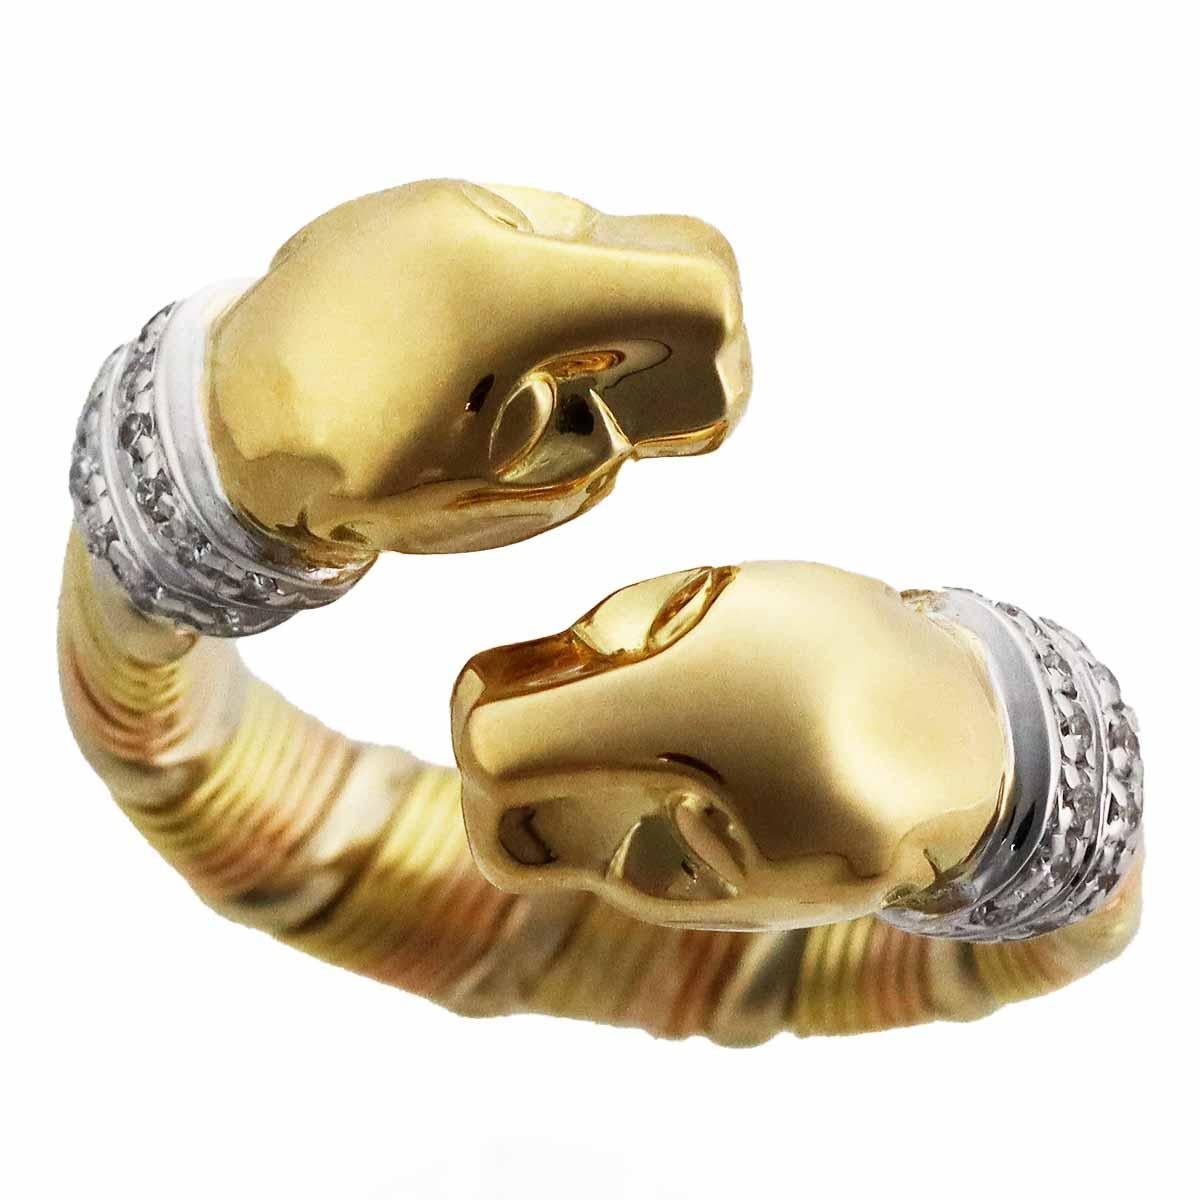 Marke:Cartier
Name:Cougar Ring
Werkstoff: Diamant, 750 K18/ YG WG PG
Gelbgold Weißgold Roségold
Kommt mit:Cartier Case,Cartier Reparatur Zertifikat (Sep 2018)
Ringgröße:Britisch & Australisch:H 1/2  /   USA & Kanada:4 /  Französisch & Russisch:47 / 